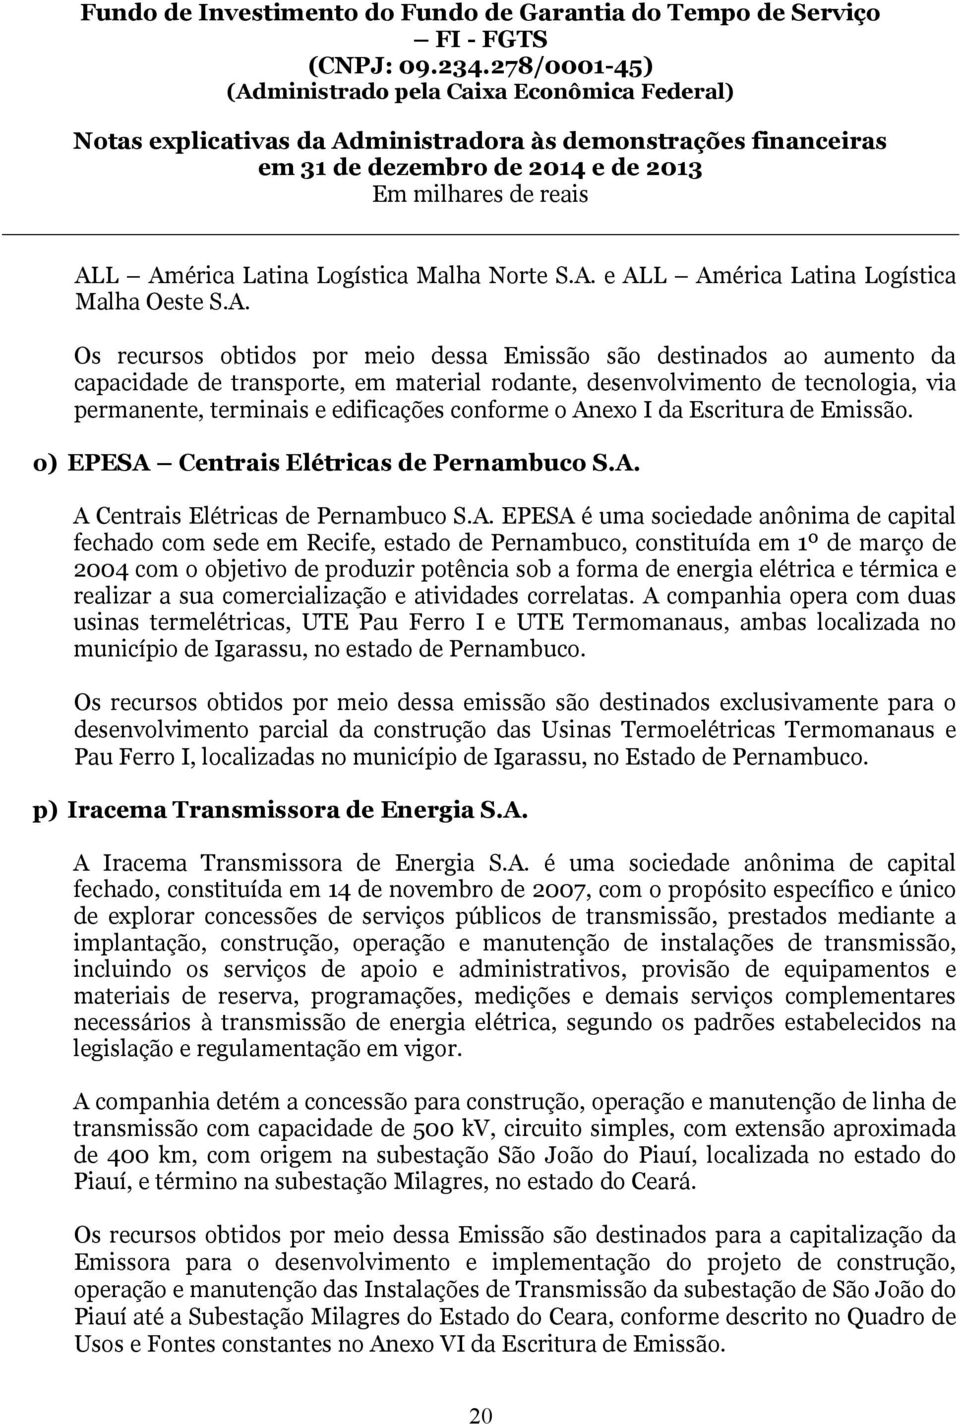 A. EPESA é uma sociedade anônima de capital fechado com sede em Recife, estado de Pernambuco, constituída em 1º de março de 2004 com o objetivo de produzir potência sob a forma de energia elétrica e